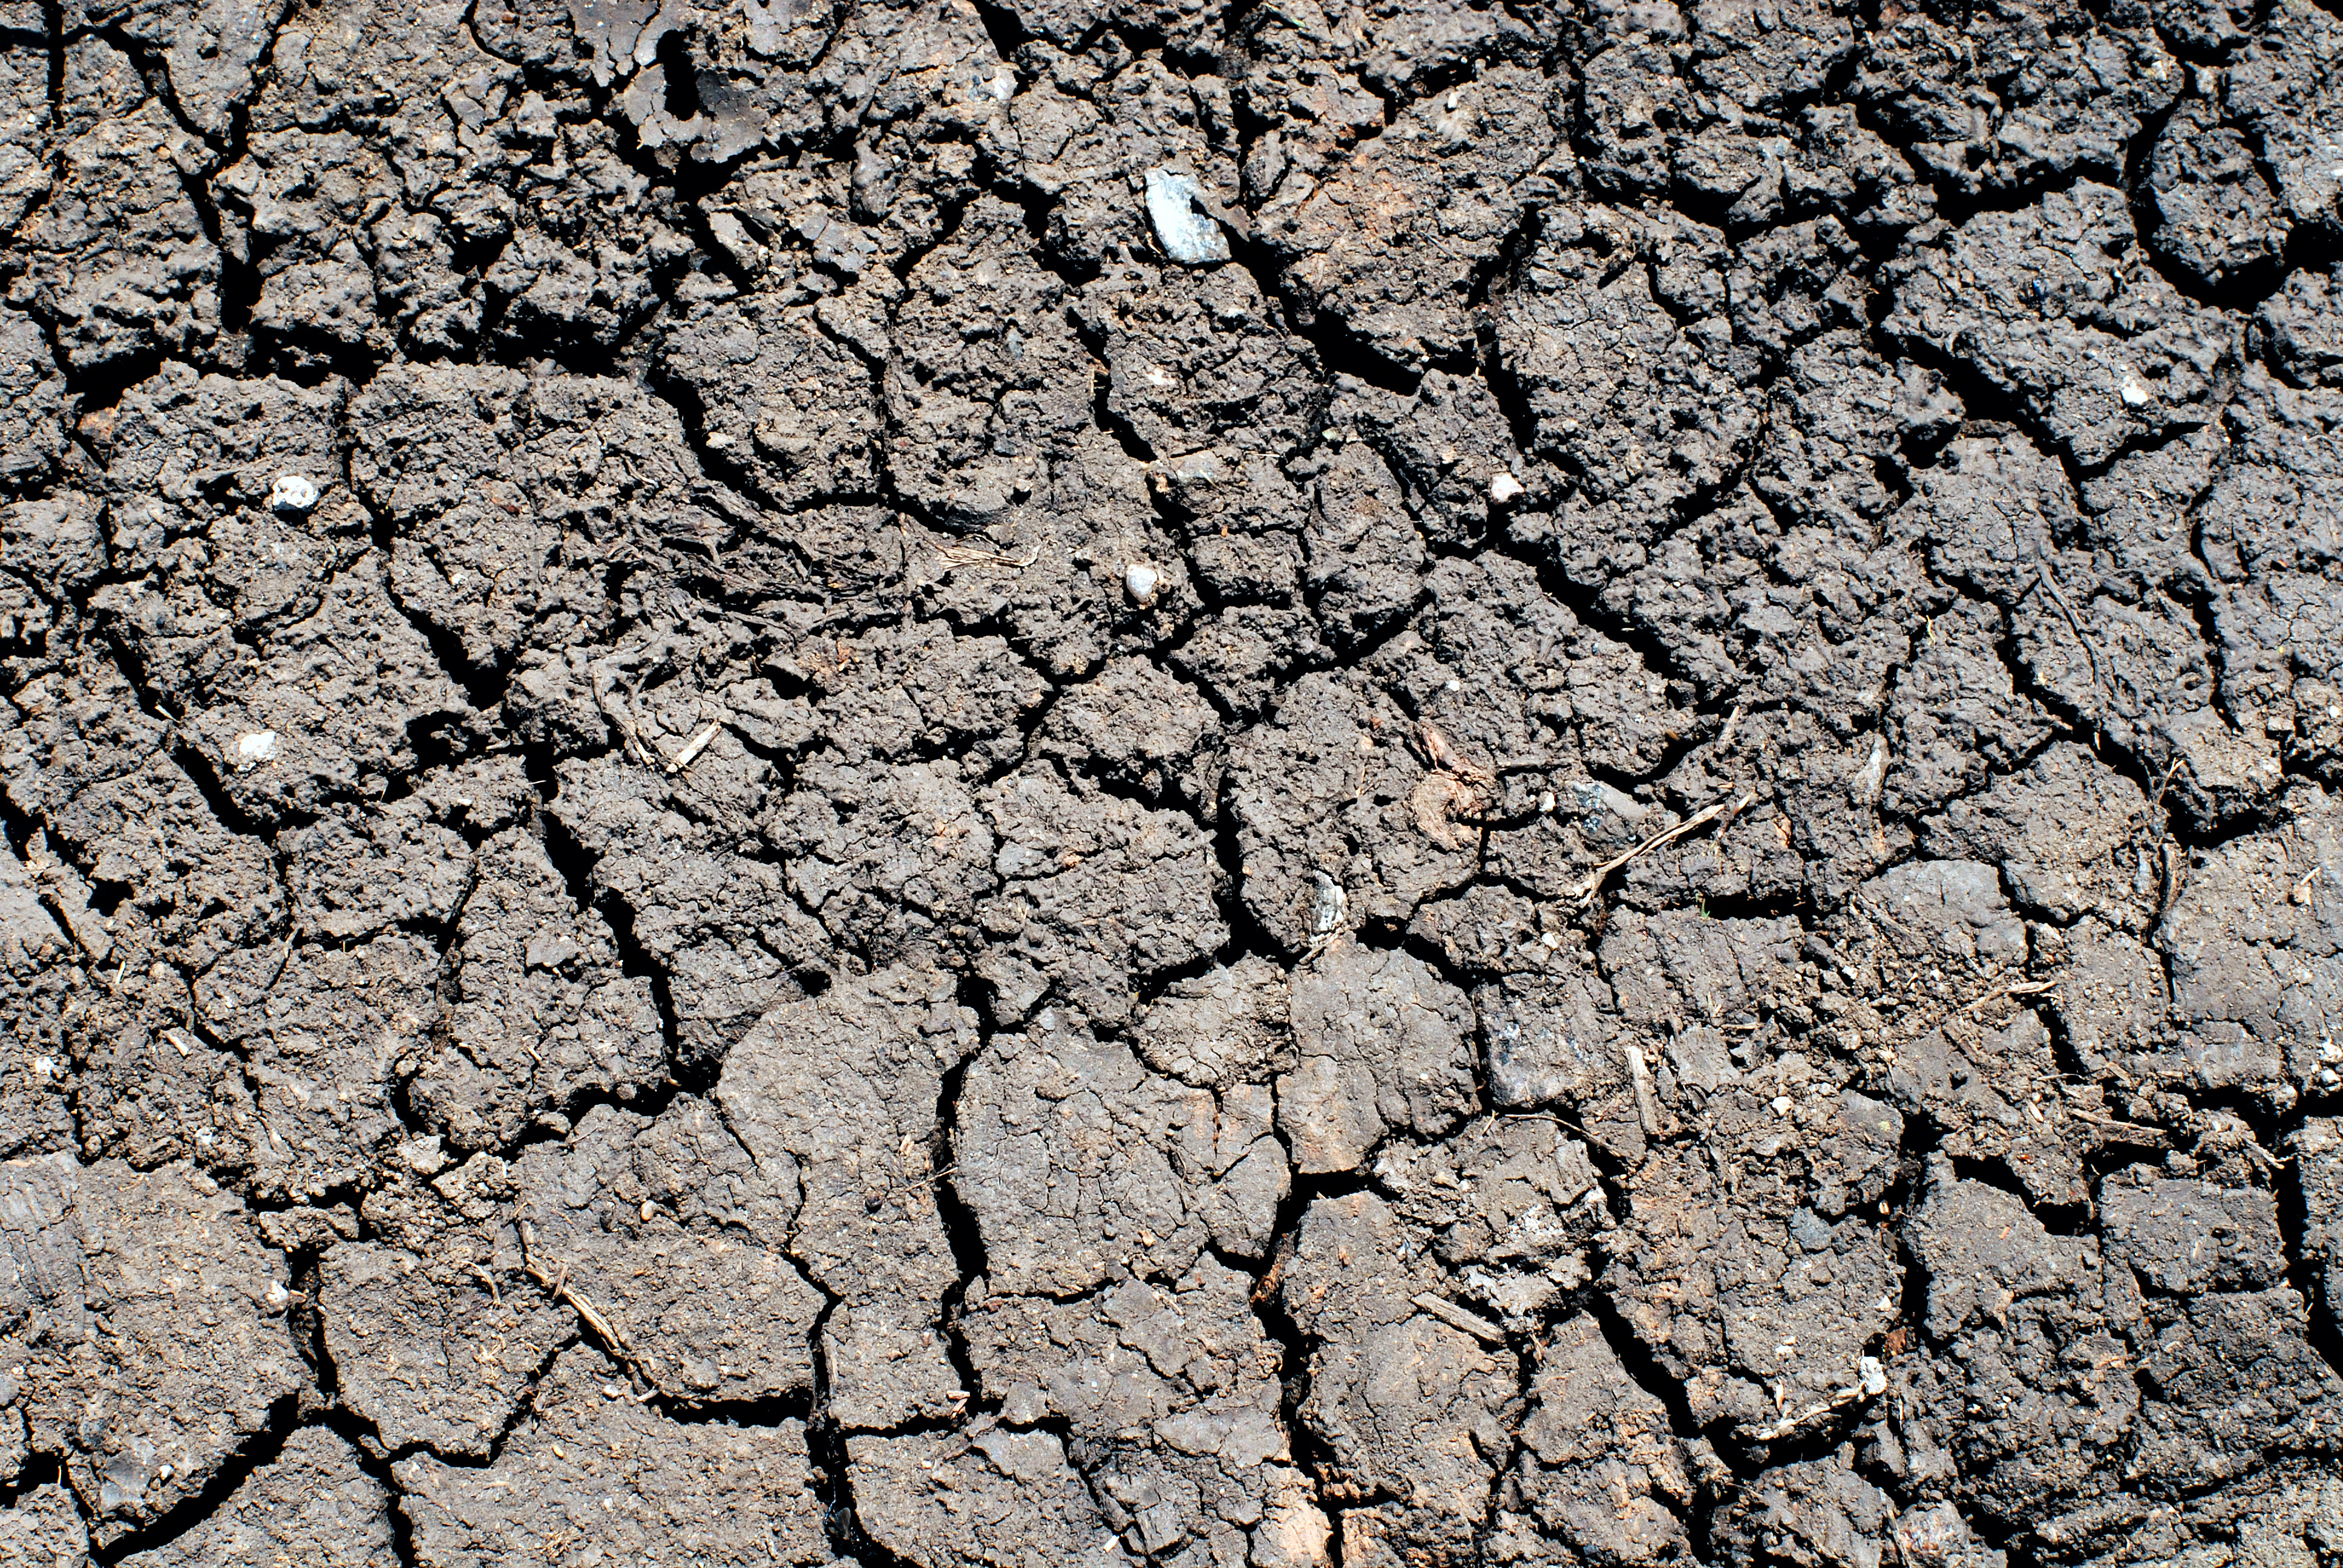 La sequía también supondría un gran problema en Europa en 2080 si no se frena el cambio climático, al alcanzar a unos 700.000 km2 por año –más que la superficie total de España–. Afectará a 140 millones de personas al año, alerta el estudio del JRC. Imagen: Aliaksandr Zabudzko. Fuente: PhotoXpress.